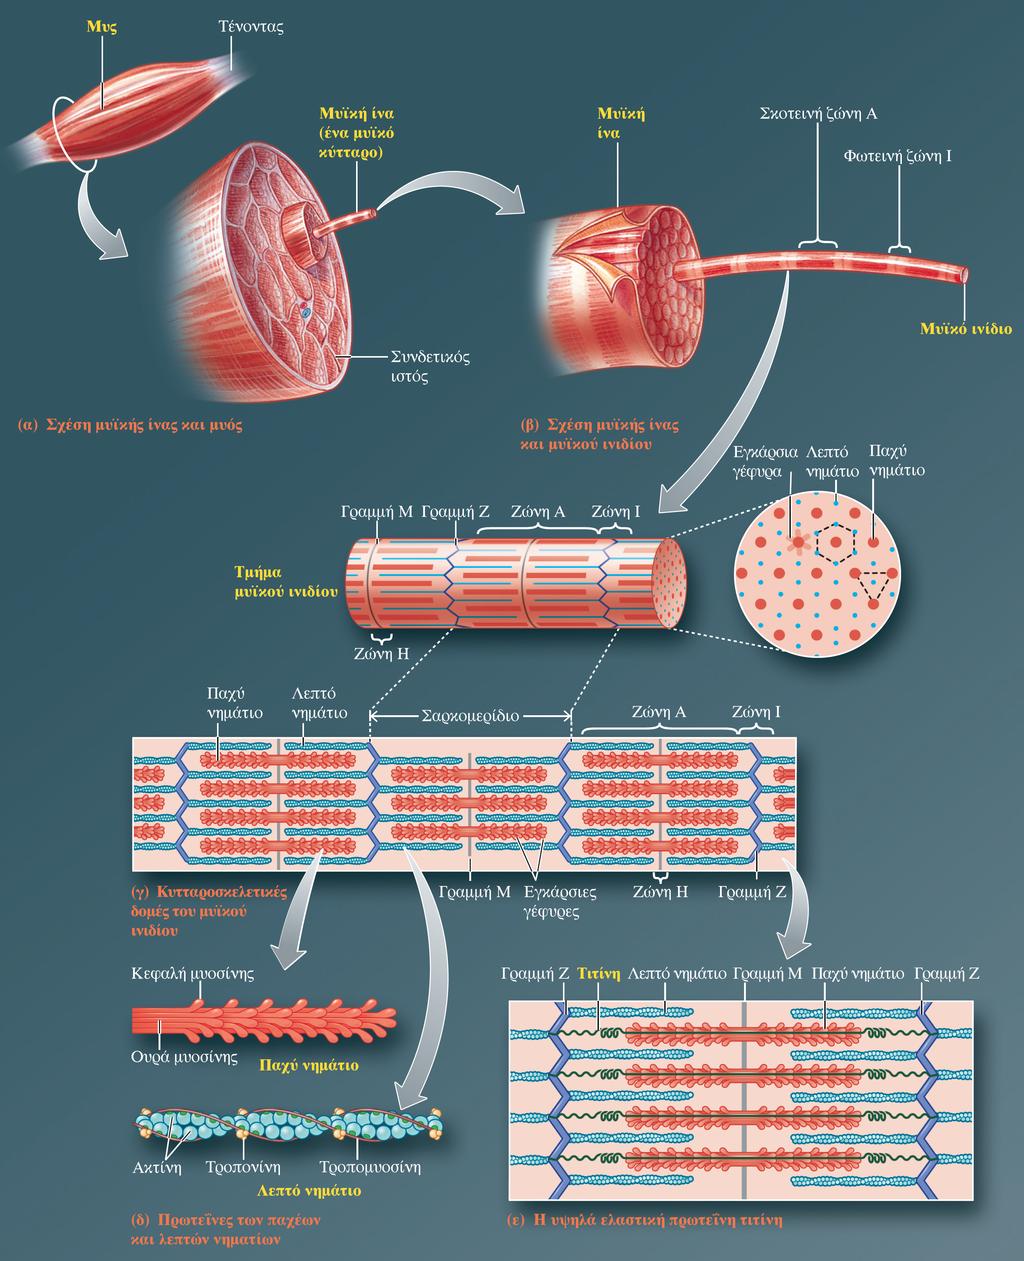 Μυϊκή ίνα Επίπεδα οργάνωσης των σκελετικών μυών Μυς: μυϊκές ίνες & συνδετικός ιστός (όργανο) Μυς Μυϊκή ίνα (κύτταρο) Μυϊκό ινίδιο Παχέα & Λεπτά νημάτια Μυϊκό ινίδιο